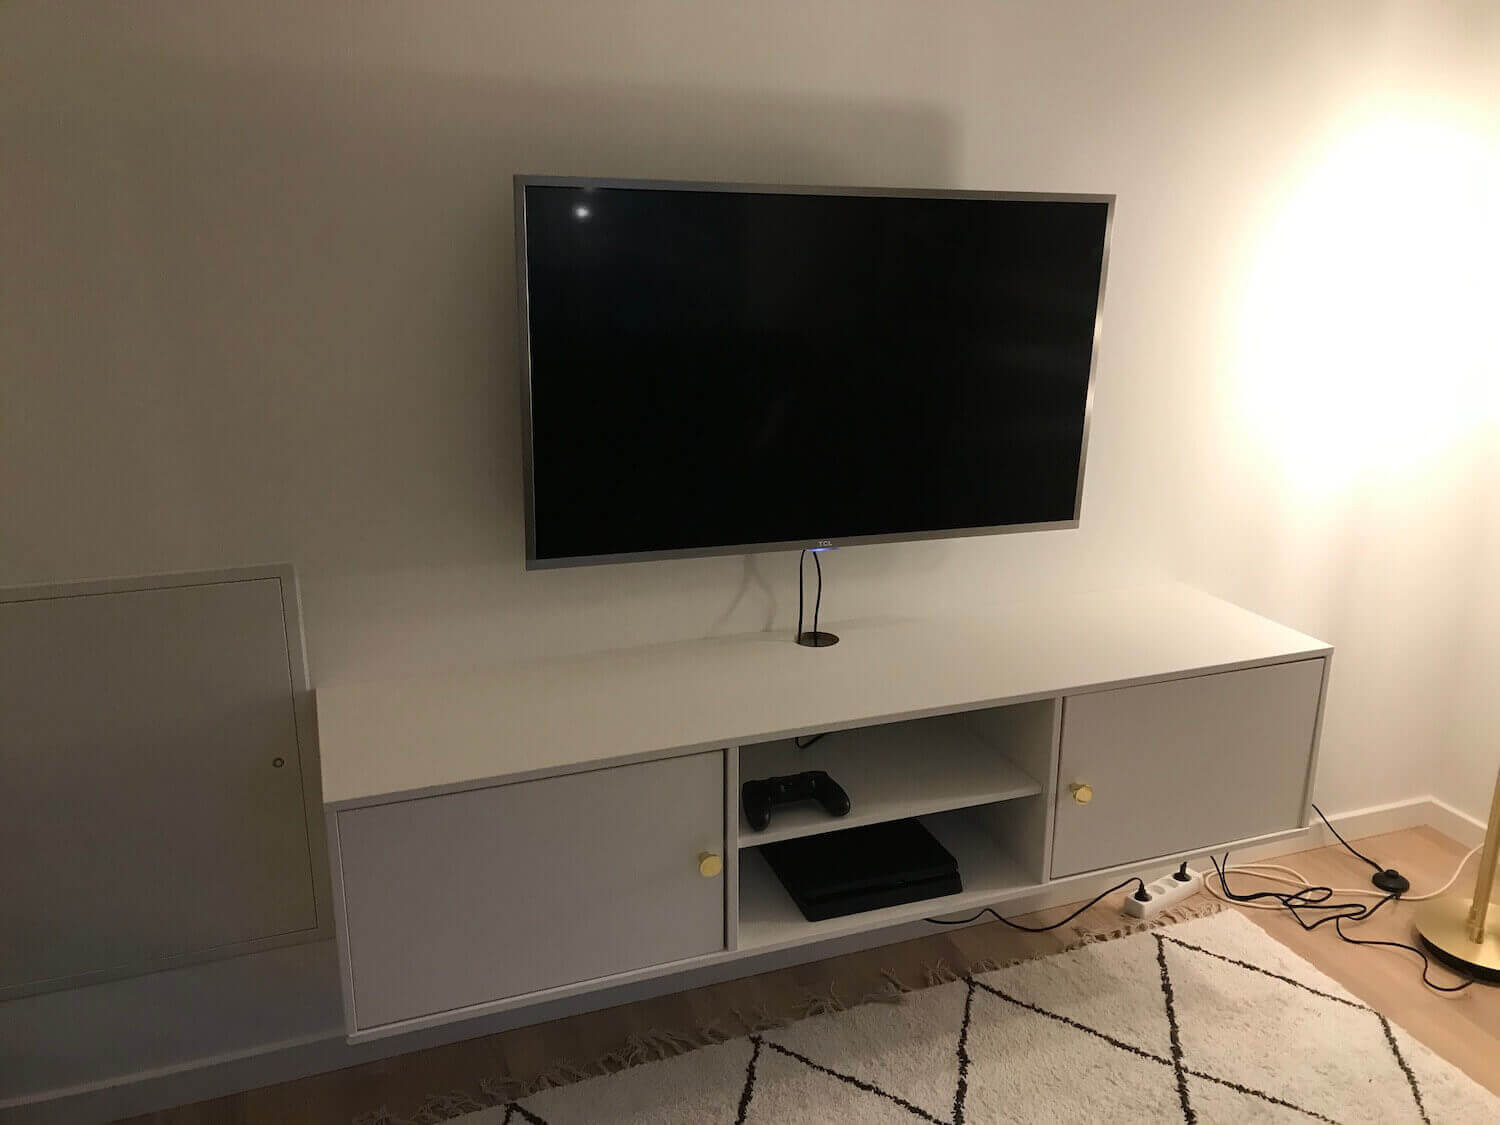 Installation af TCL TV og TV møbel